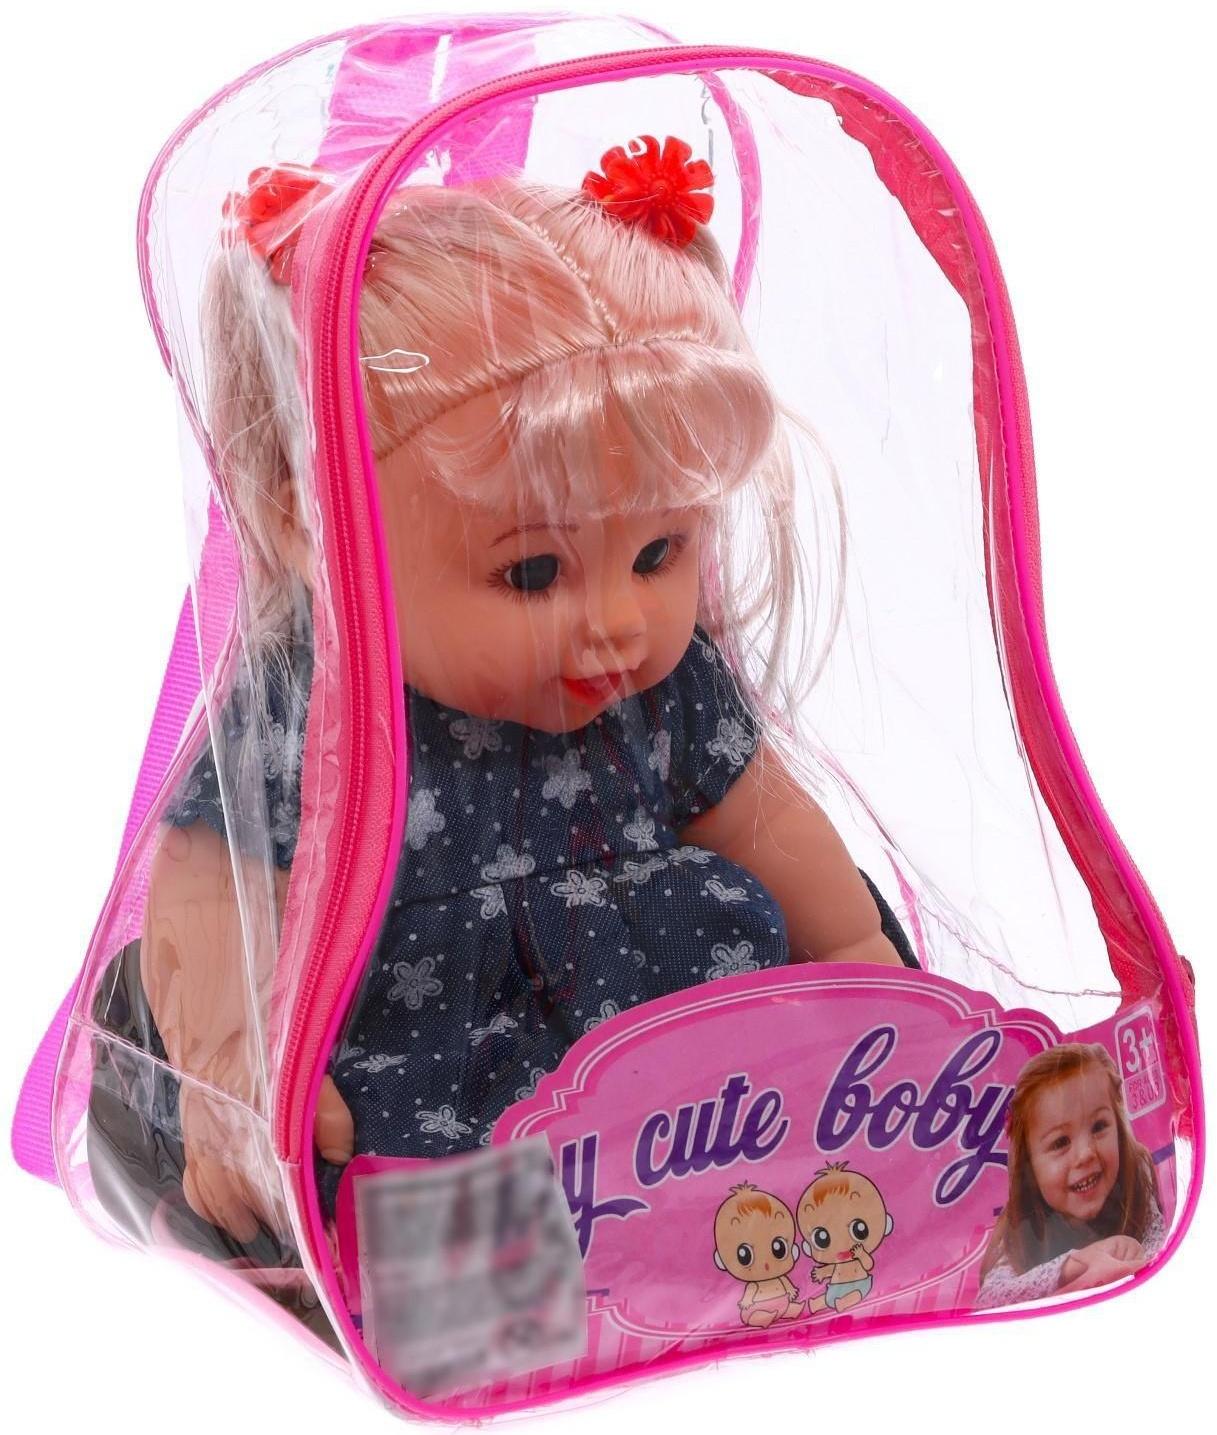 Кукла классическая «Малышка», в синем платье, с аксессуарами